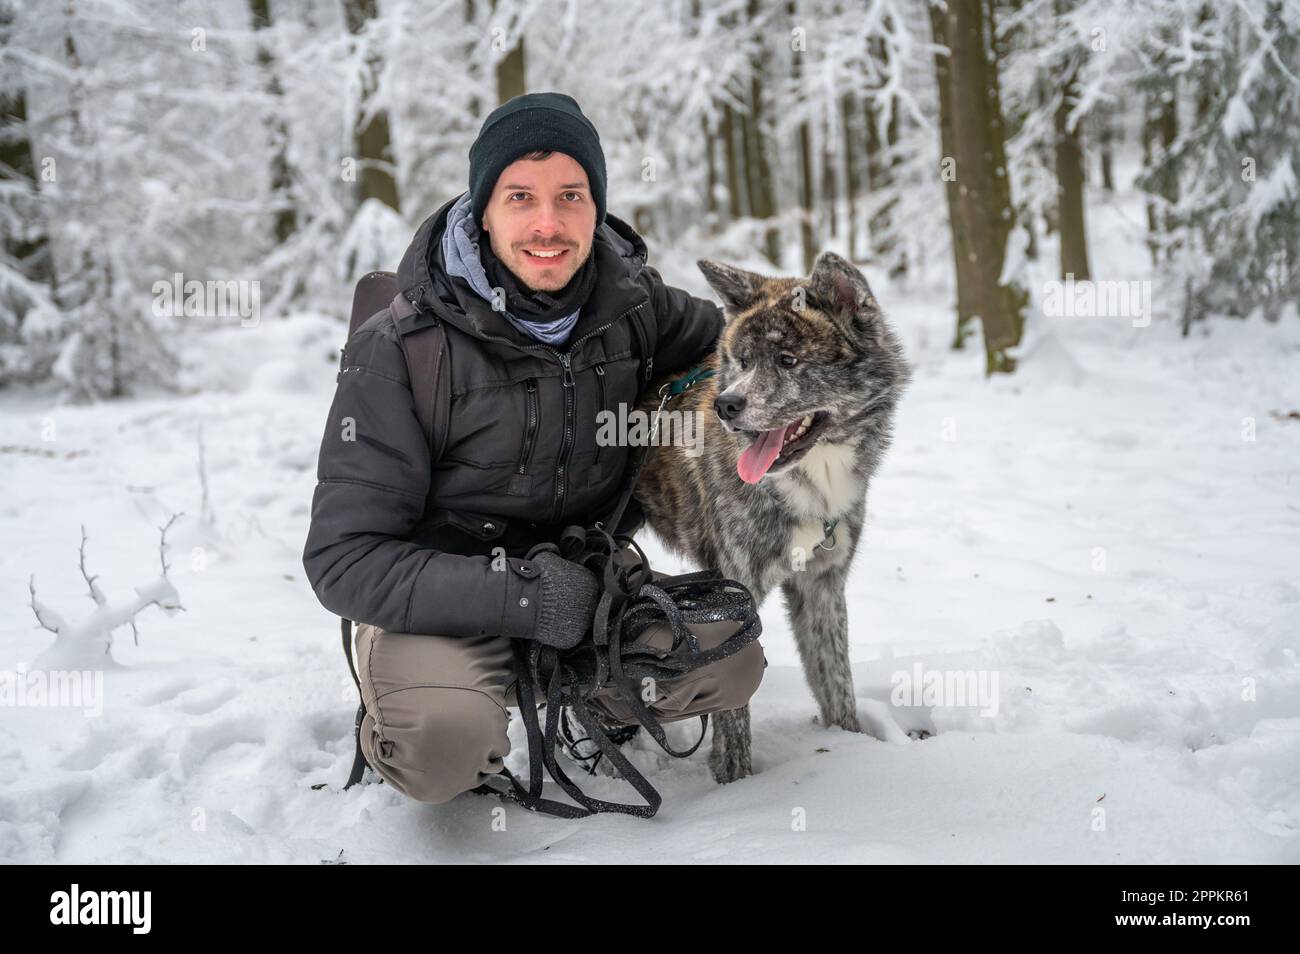 Padrone con il suo cane Akita Inu di colore grigio nella foresta durante l'inverno con molta neve, l'uomo sorride e guarda la macchina fotografica mentre abbraccia il suo cane Foto Stock